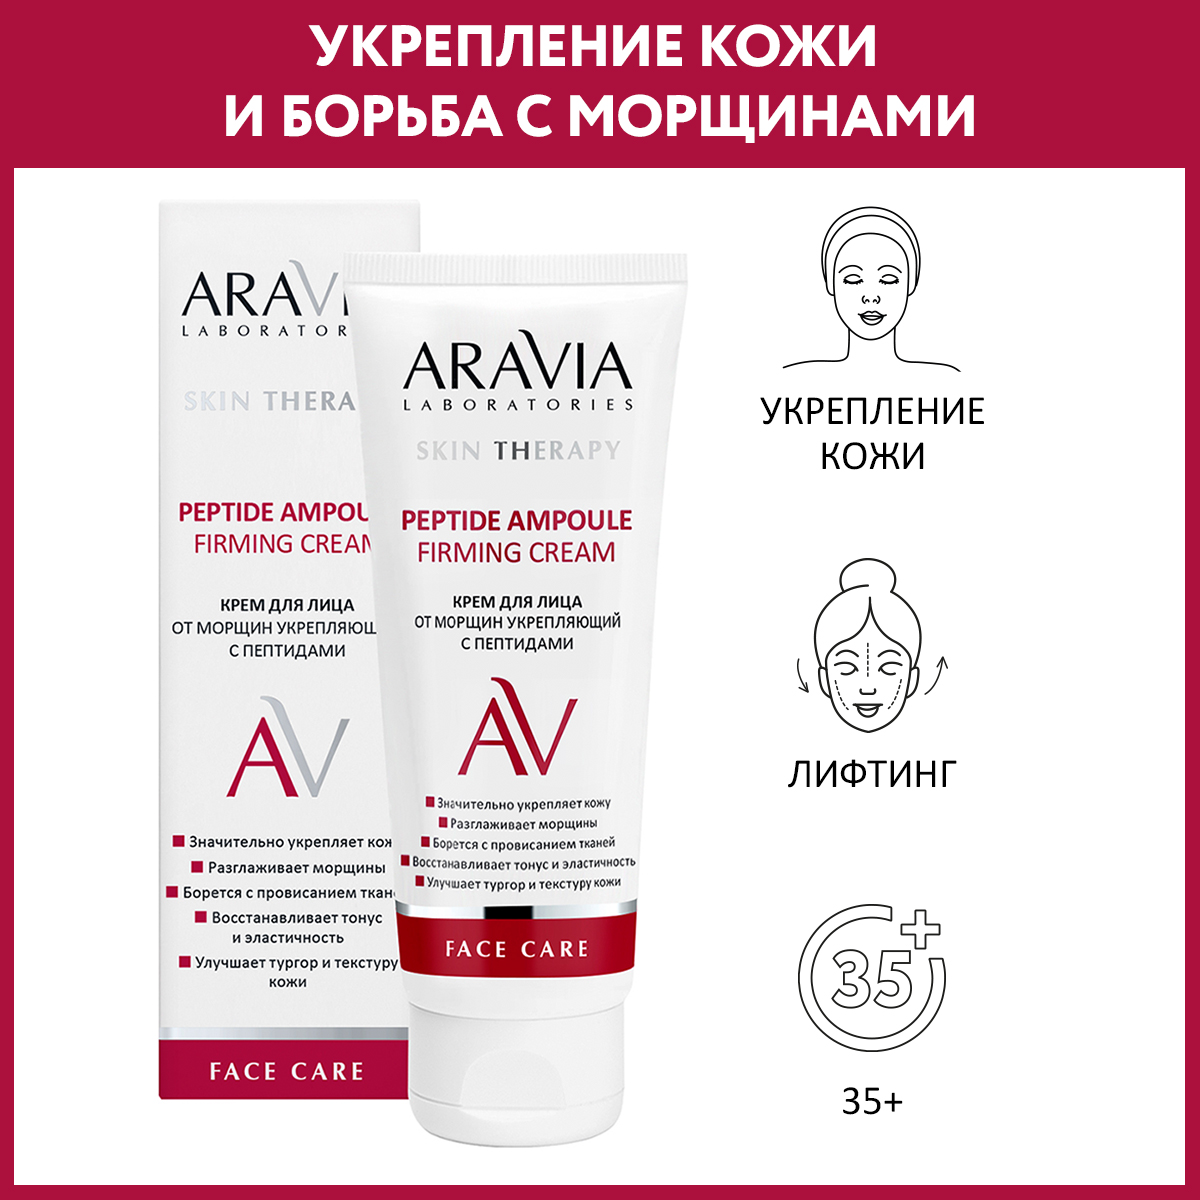 Крем для лица ARAVIA Laboratories от морщин с пептидами Peptide Ampoule Firming Cream 50 мл - фото 1